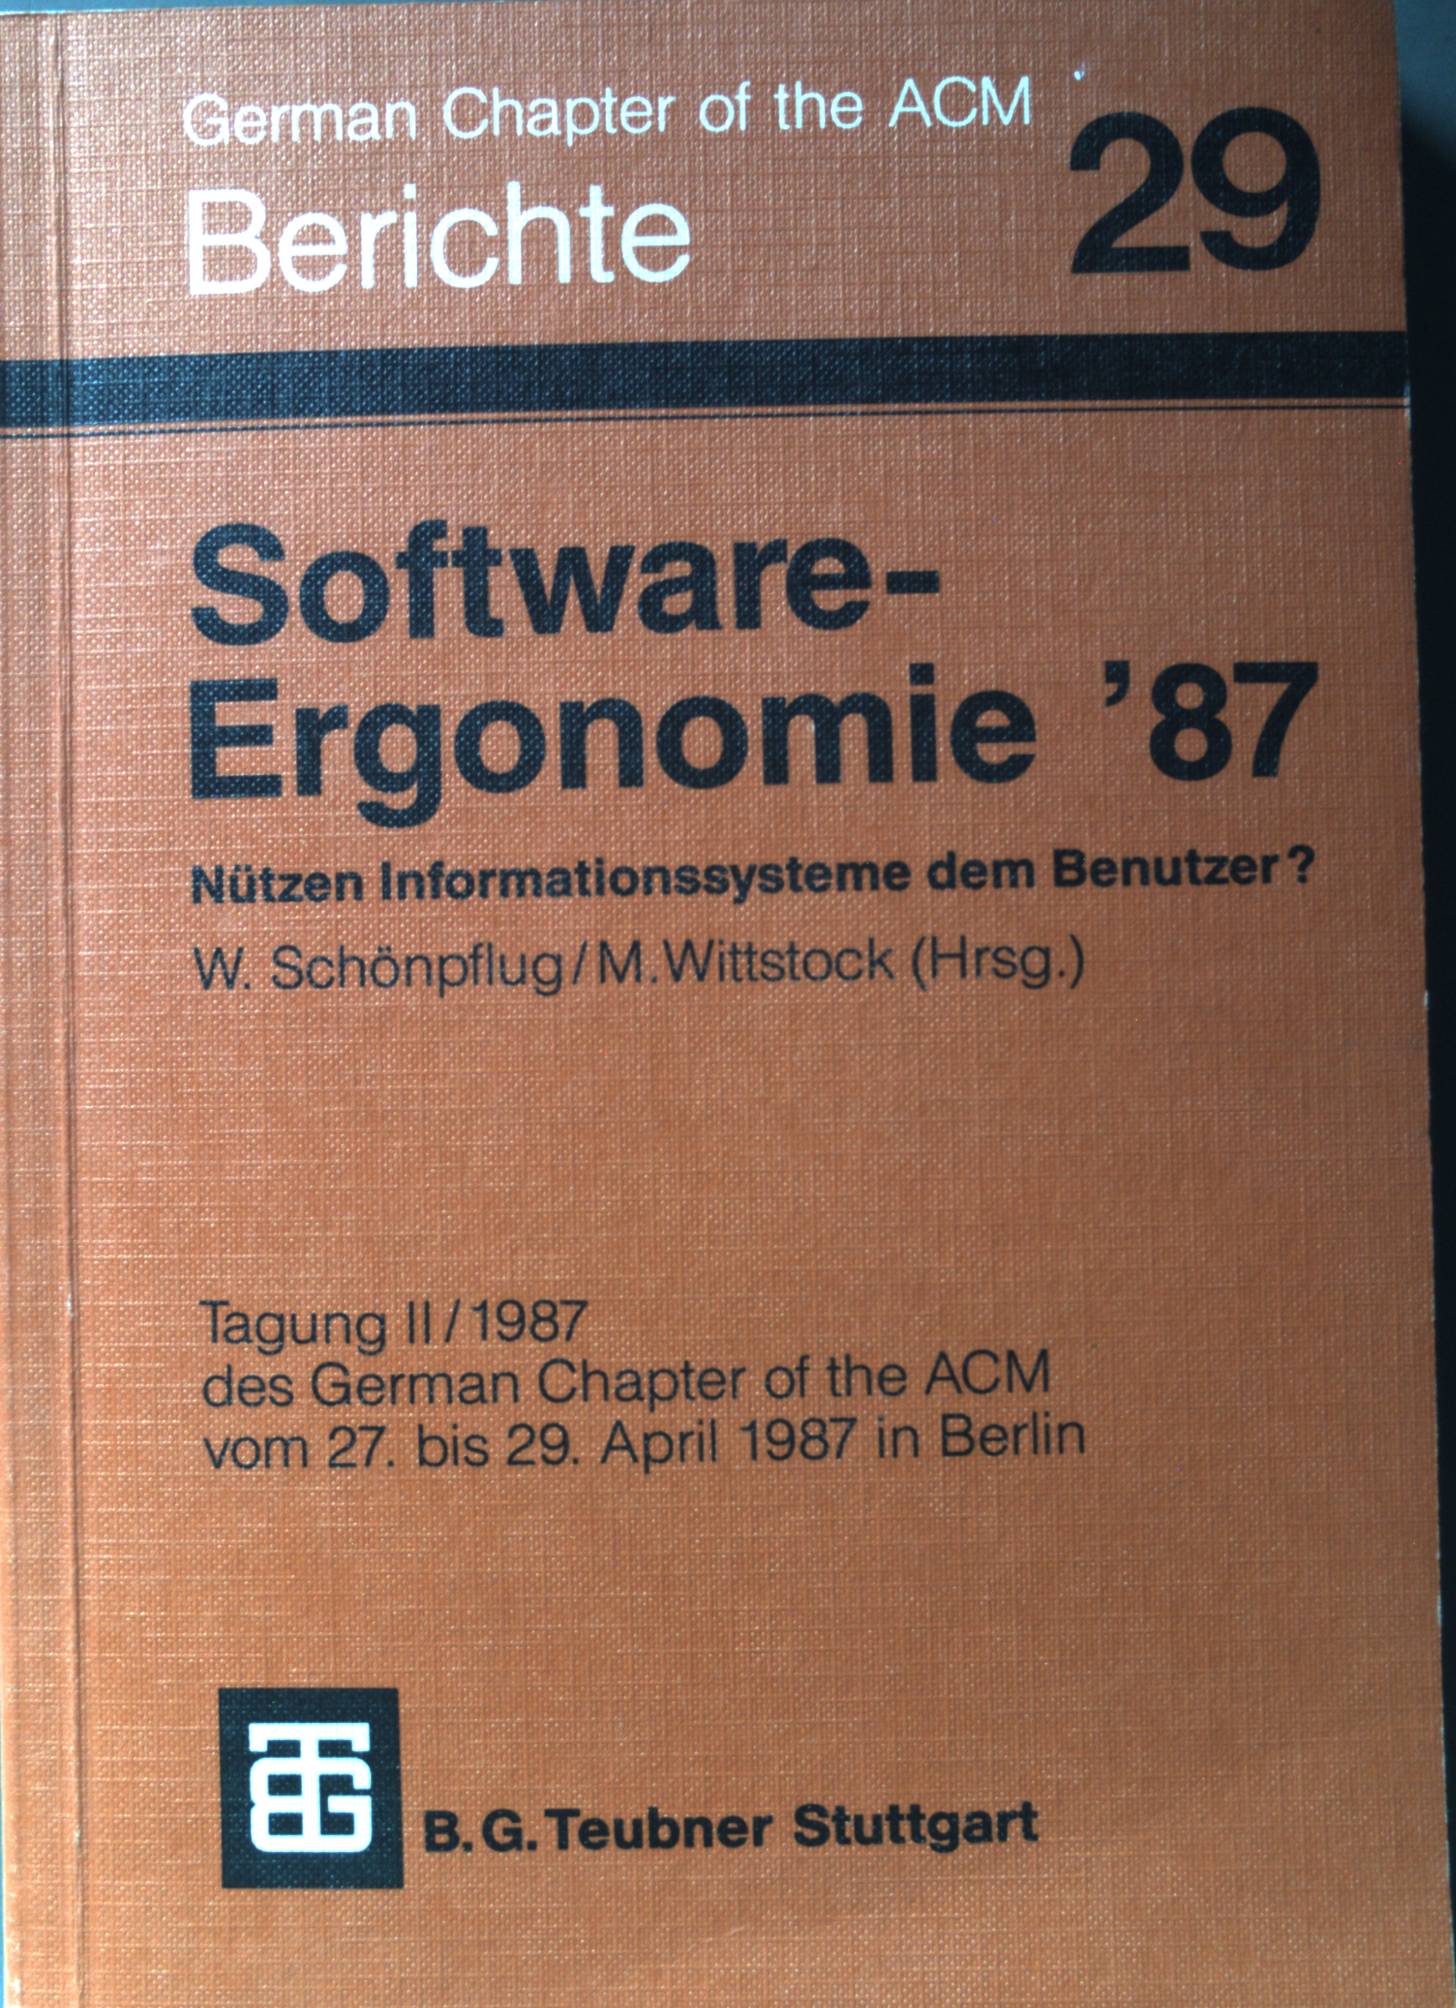 Software-Ergonomie '87 Nützen Informationssysteme dem Benutzer?. Berichte des German Chapter of the ACM ; Bd. 29. - Schönpflug, W. und M. Wittstock